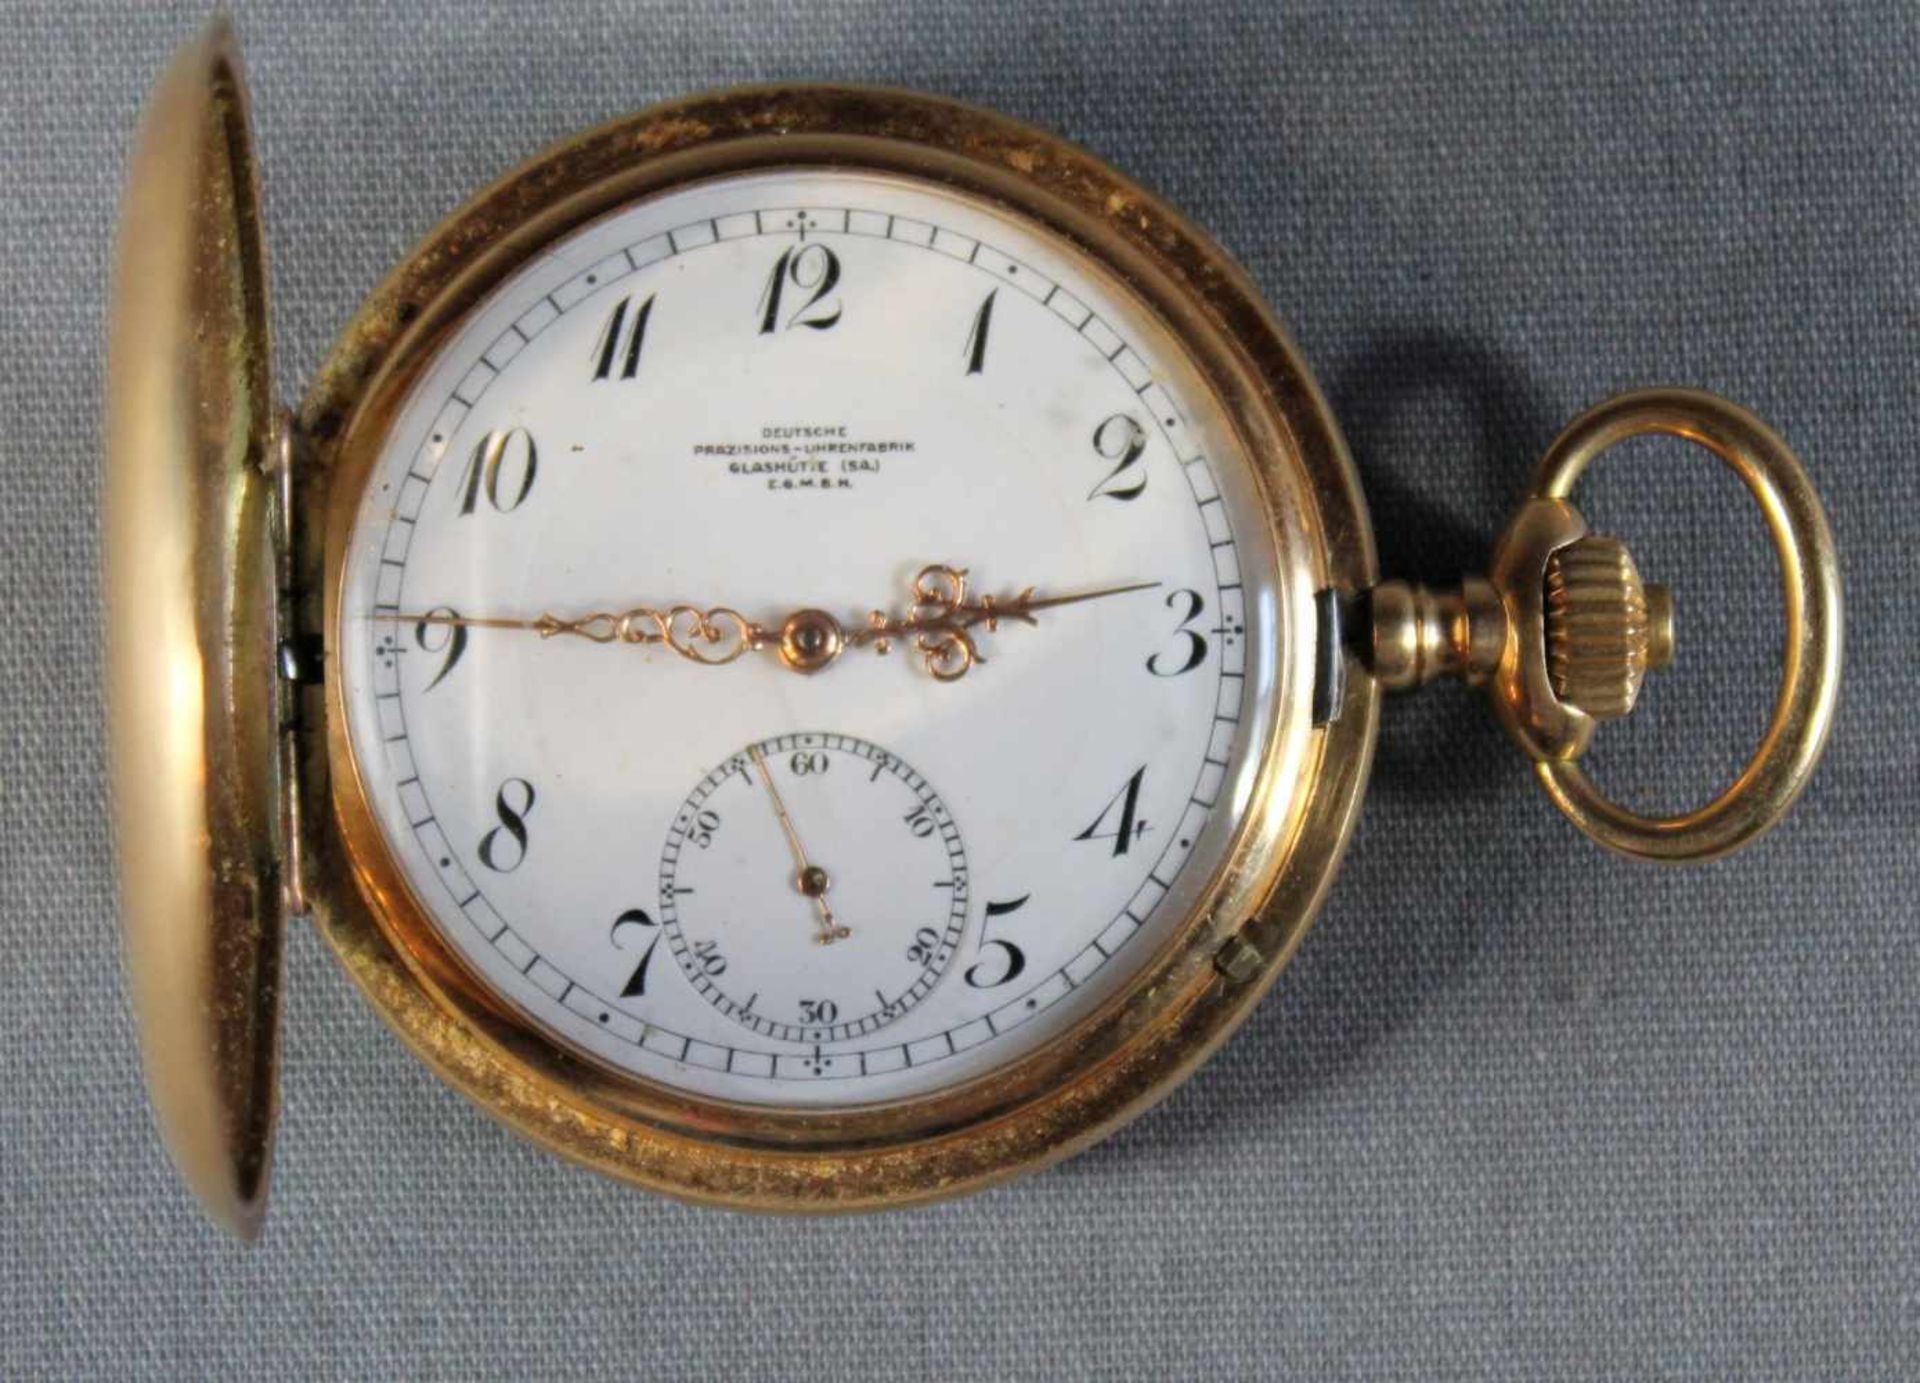 1 Sprungdeckeluhr 14kt.Gg (585/000) "Deutsche Präzisions-Uhrenfabrik Glashütte E.G.M.B.H.", - Bild 3 aus 5